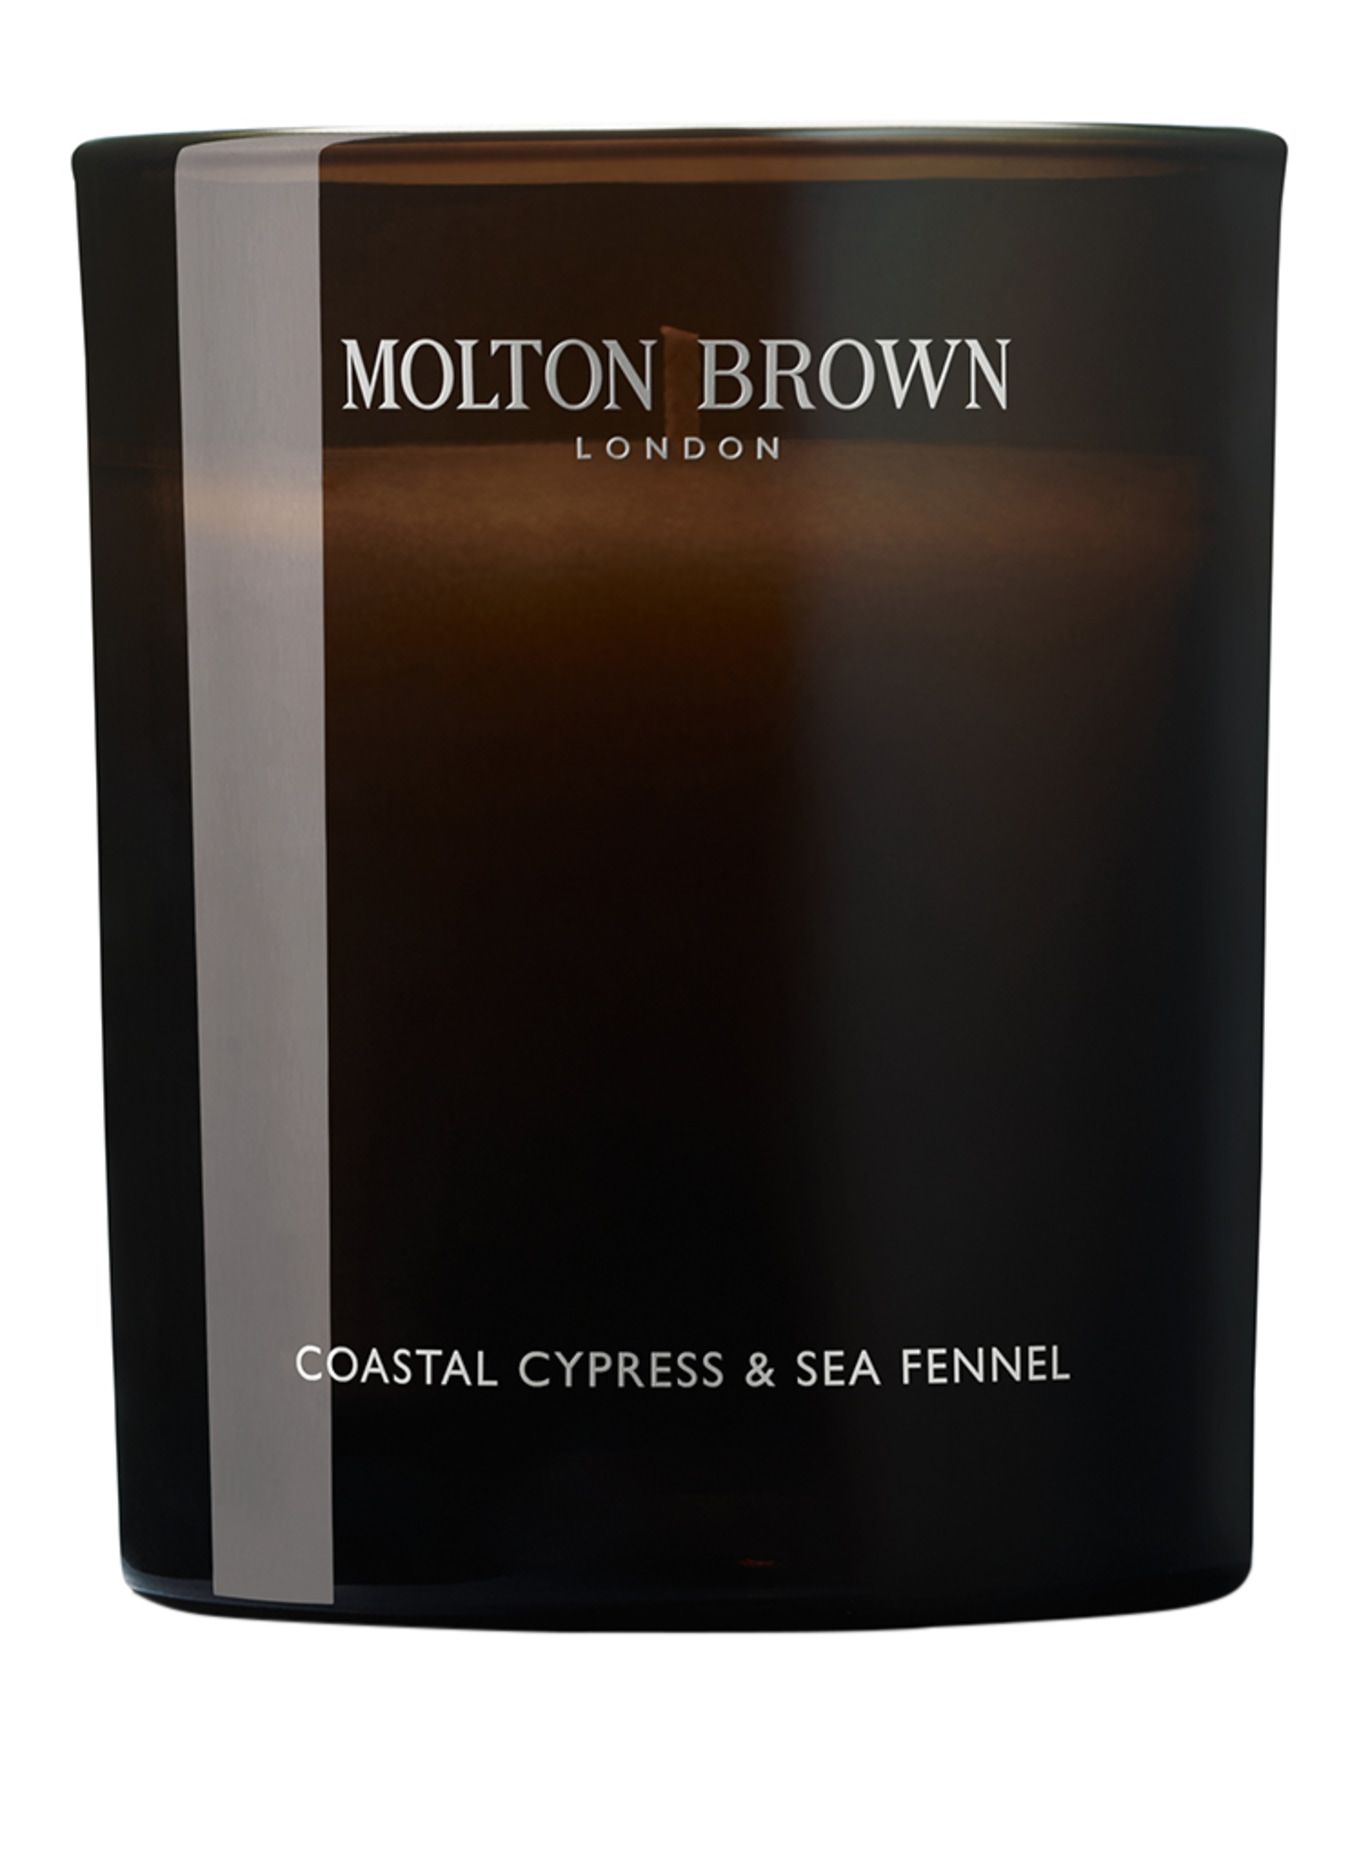 MOLTON BROWN COASTAL CYPRESS & SEA FENNEL (Obrázek 1)